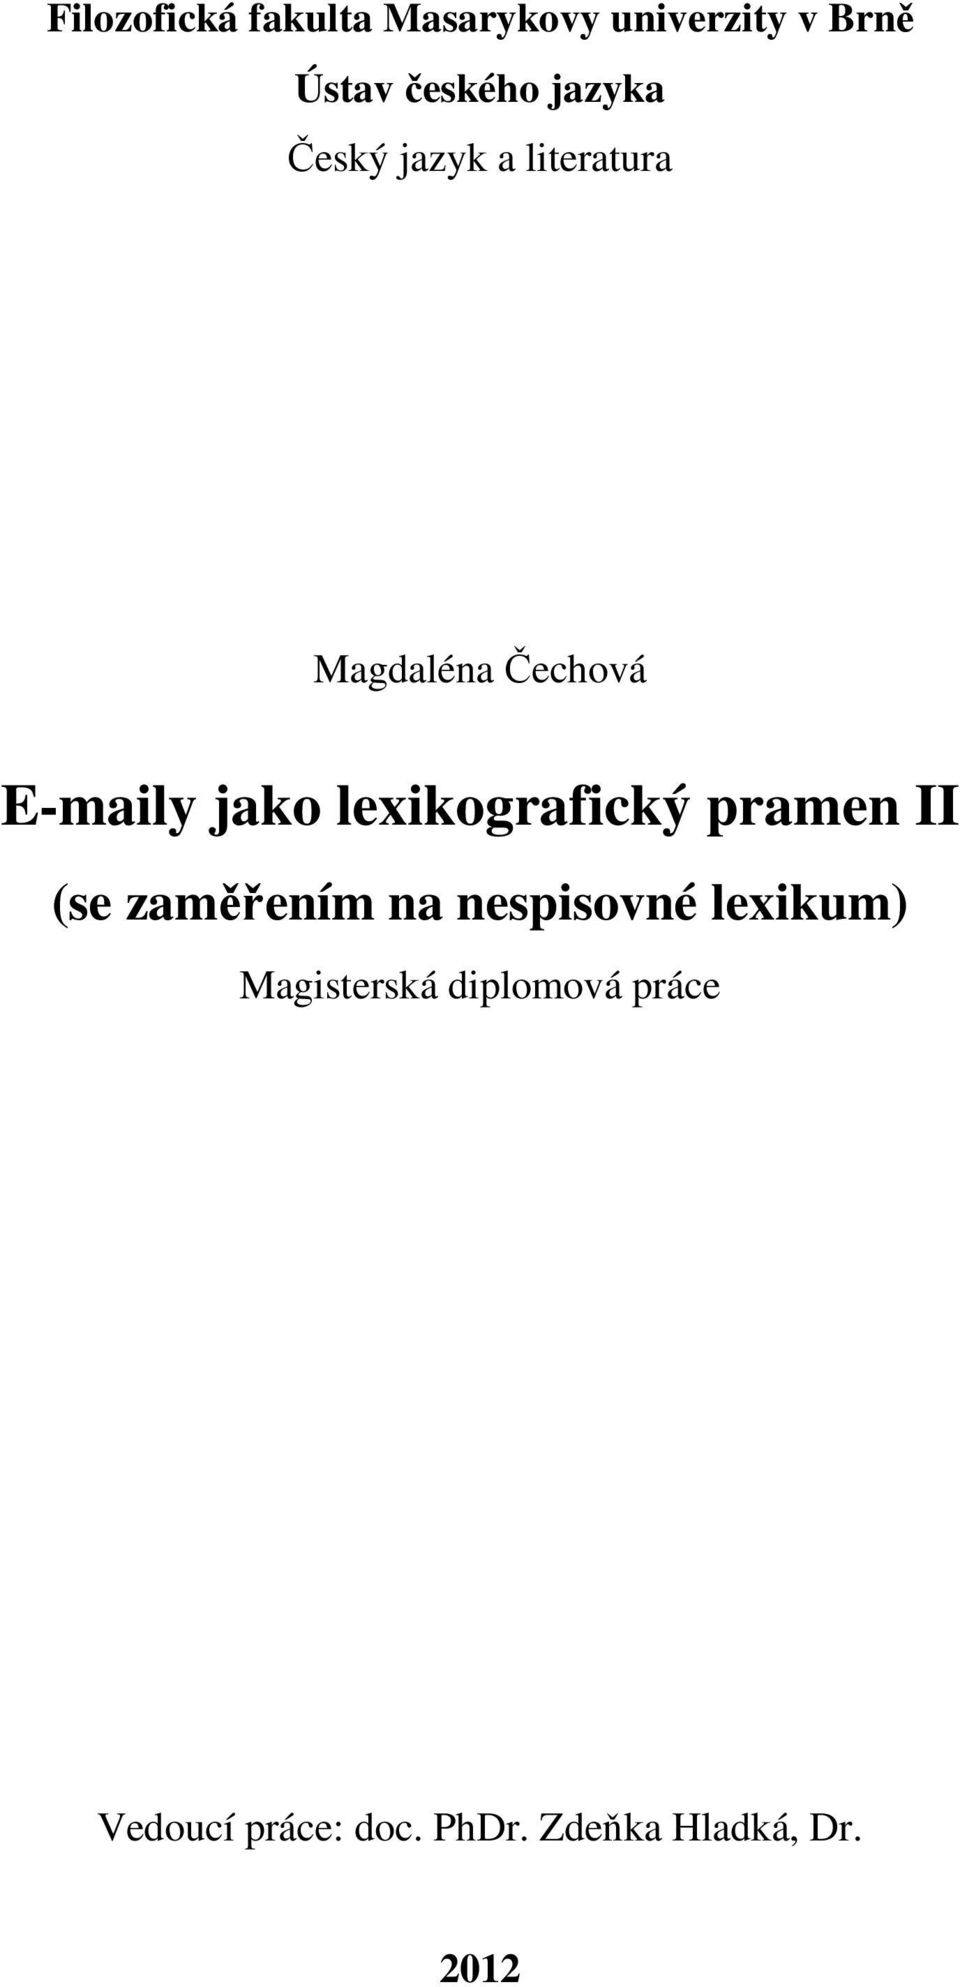 lexikografický pramen II (se zaměřením na nespisovné lexikum)